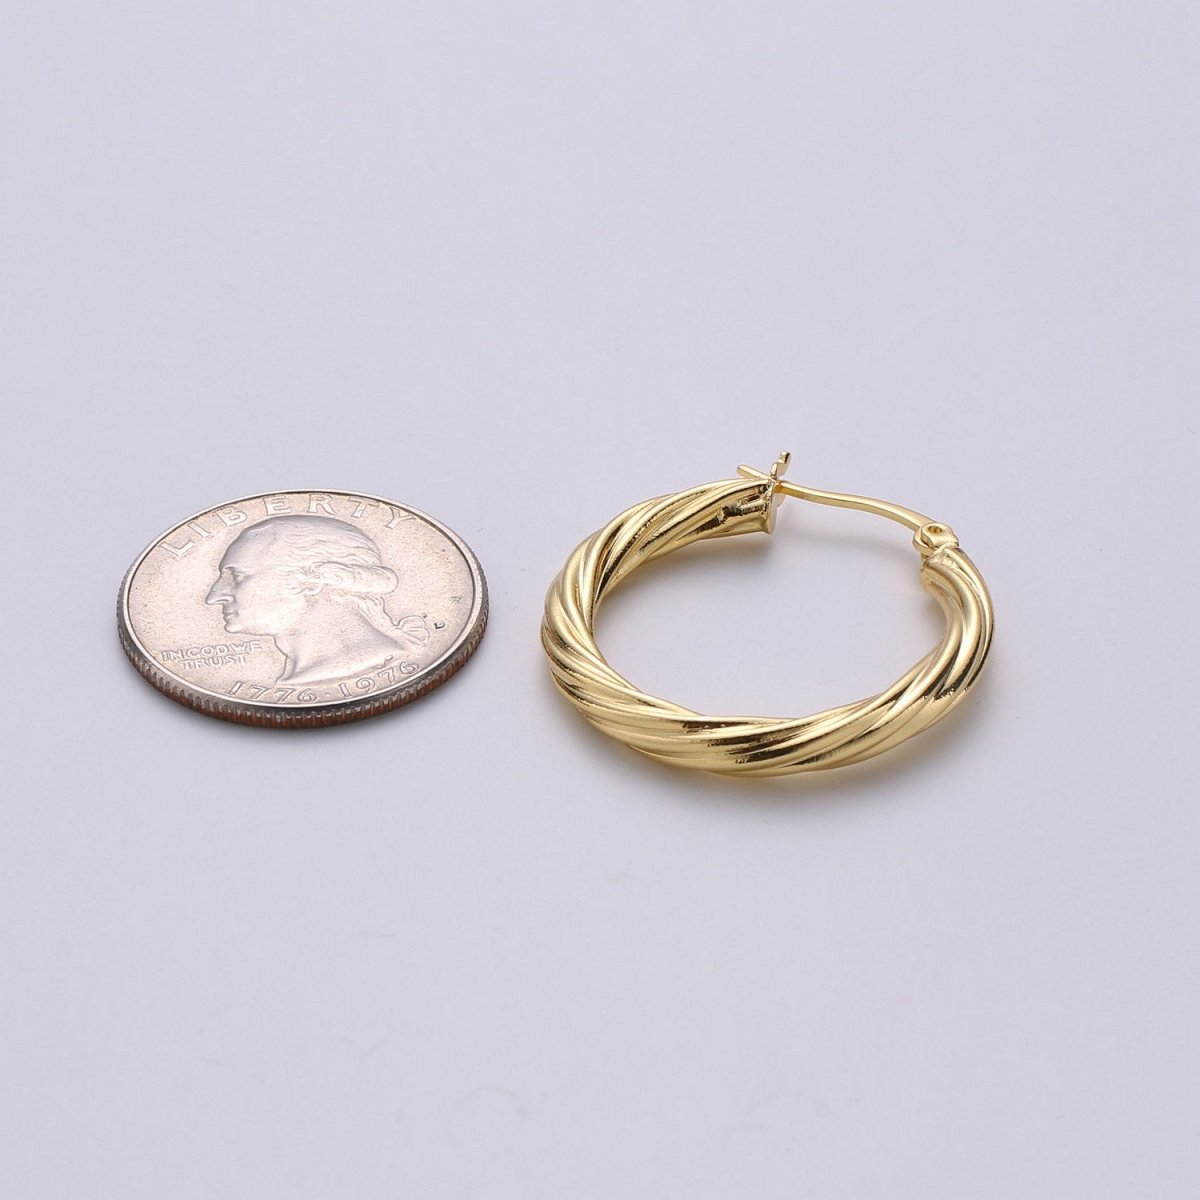 24k Vermeil Gold Earrings, Hoop Earrings, Small Hoop, Circle Rope Texture Earring, Gift for Her, Earrings for Women, Everyday Wear Earrings Q-533 - DLUXCA